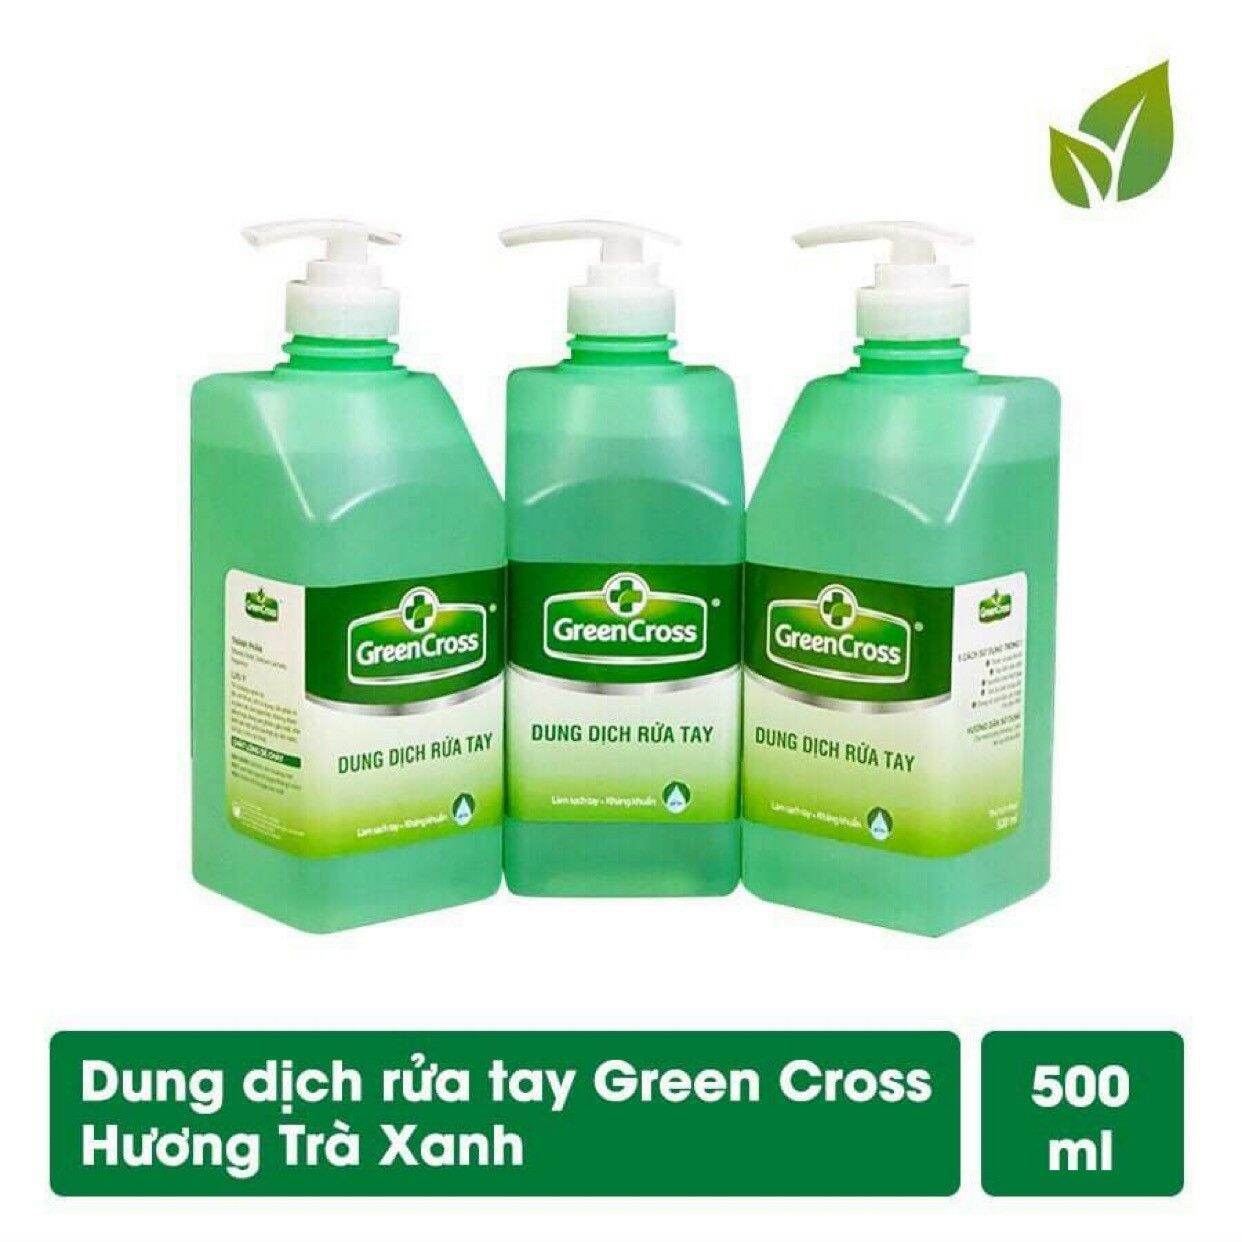 Dung Dịch Rửa Tay Green Cross 500ml - Hương Trà Xanh cao cấp